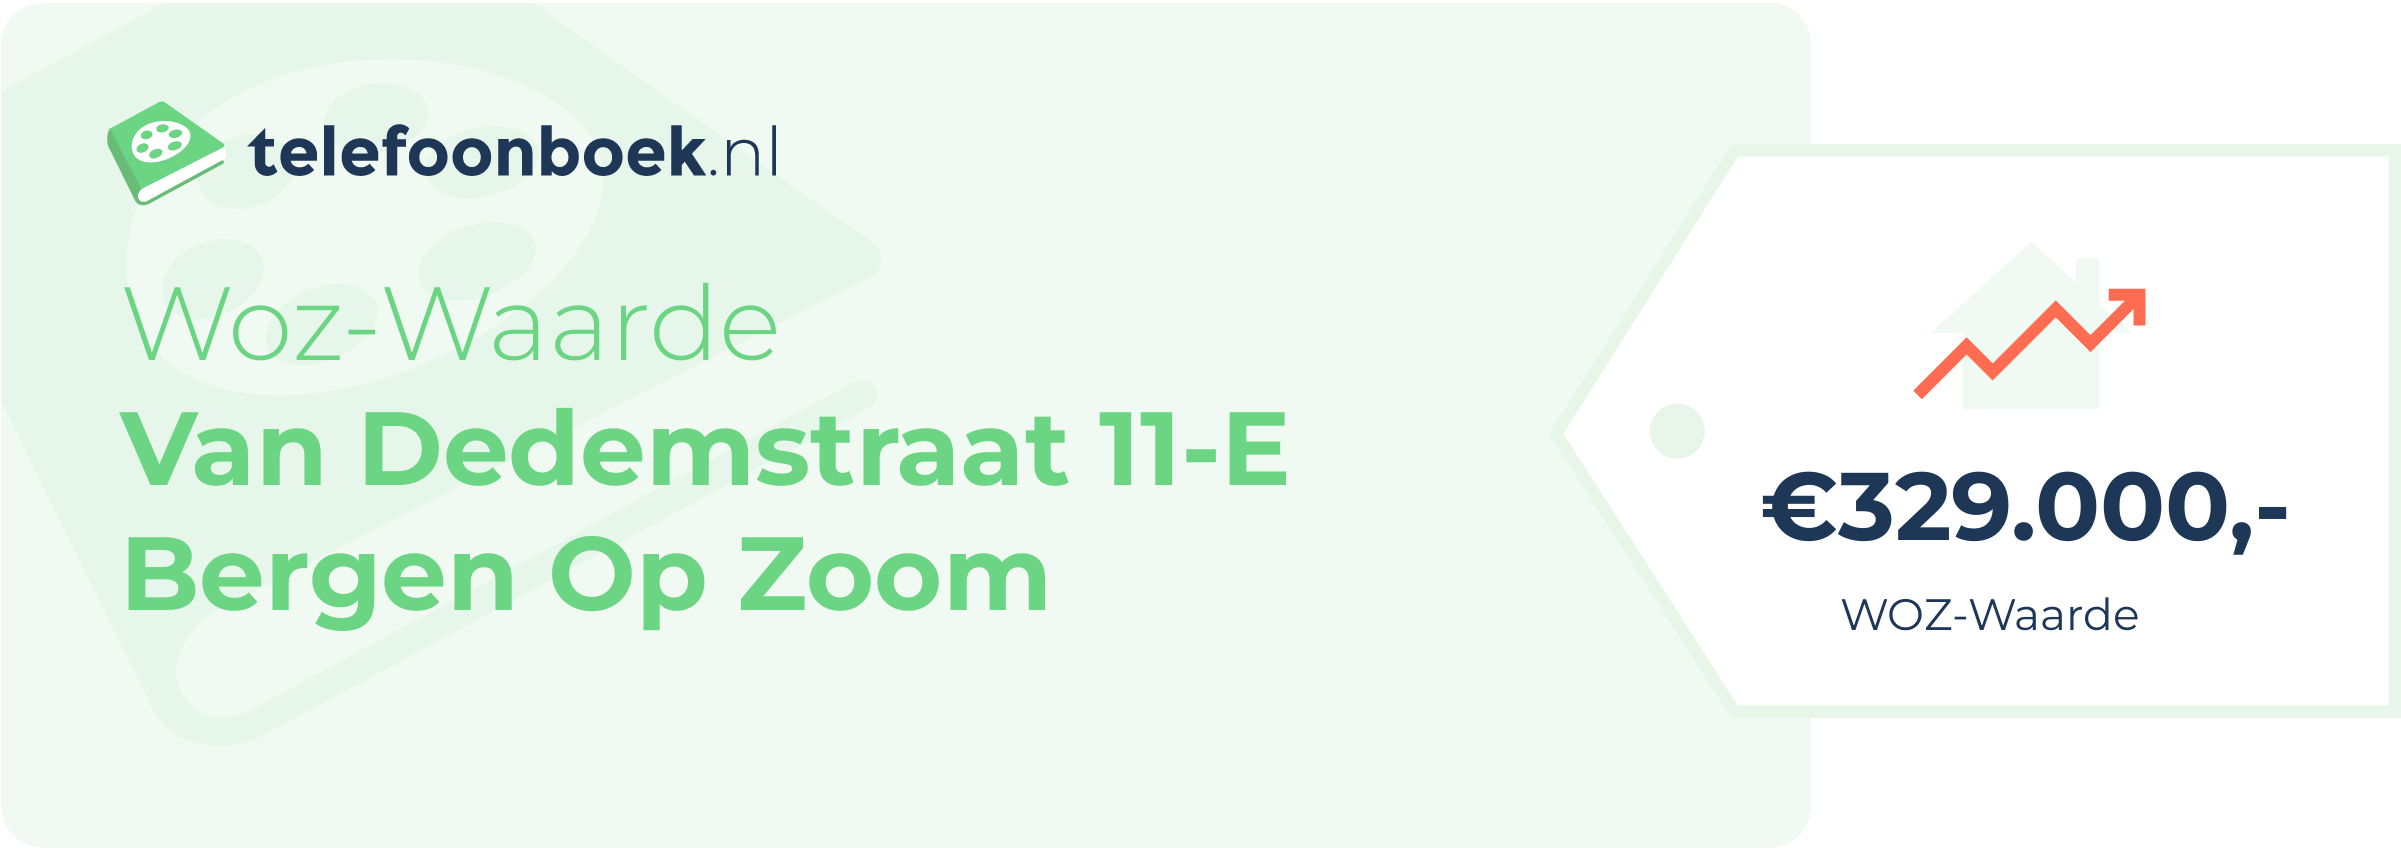 WOZ-waarde Van Dedemstraat 11-E Bergen Op Zoom